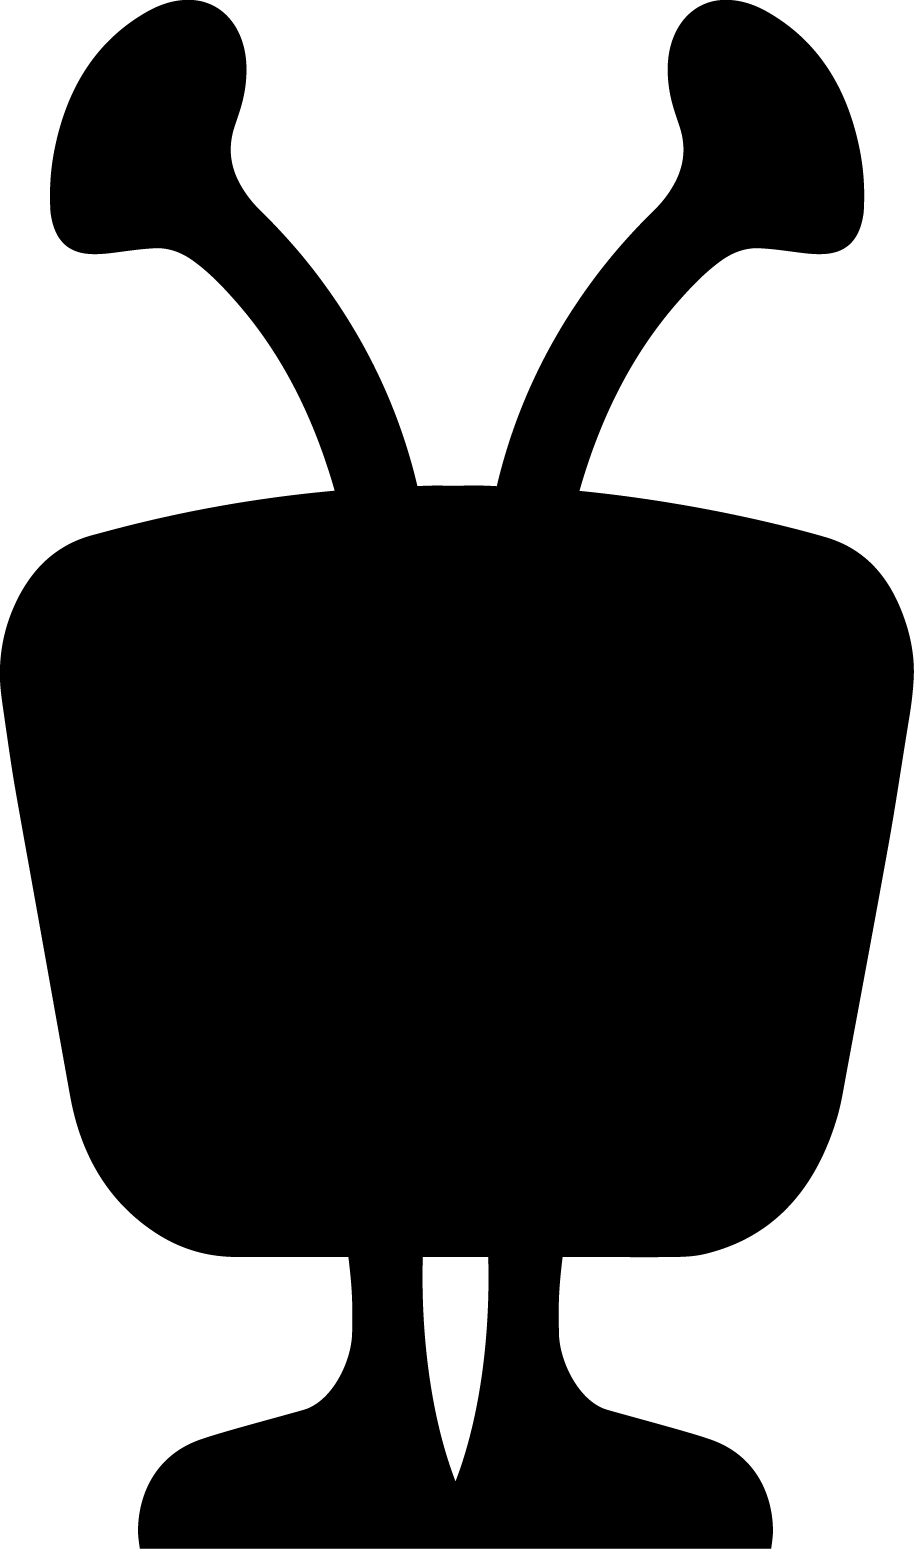 TiVo Logo - Tivo Logo [PDF] - Brand Emblems, Company Logo Downloads